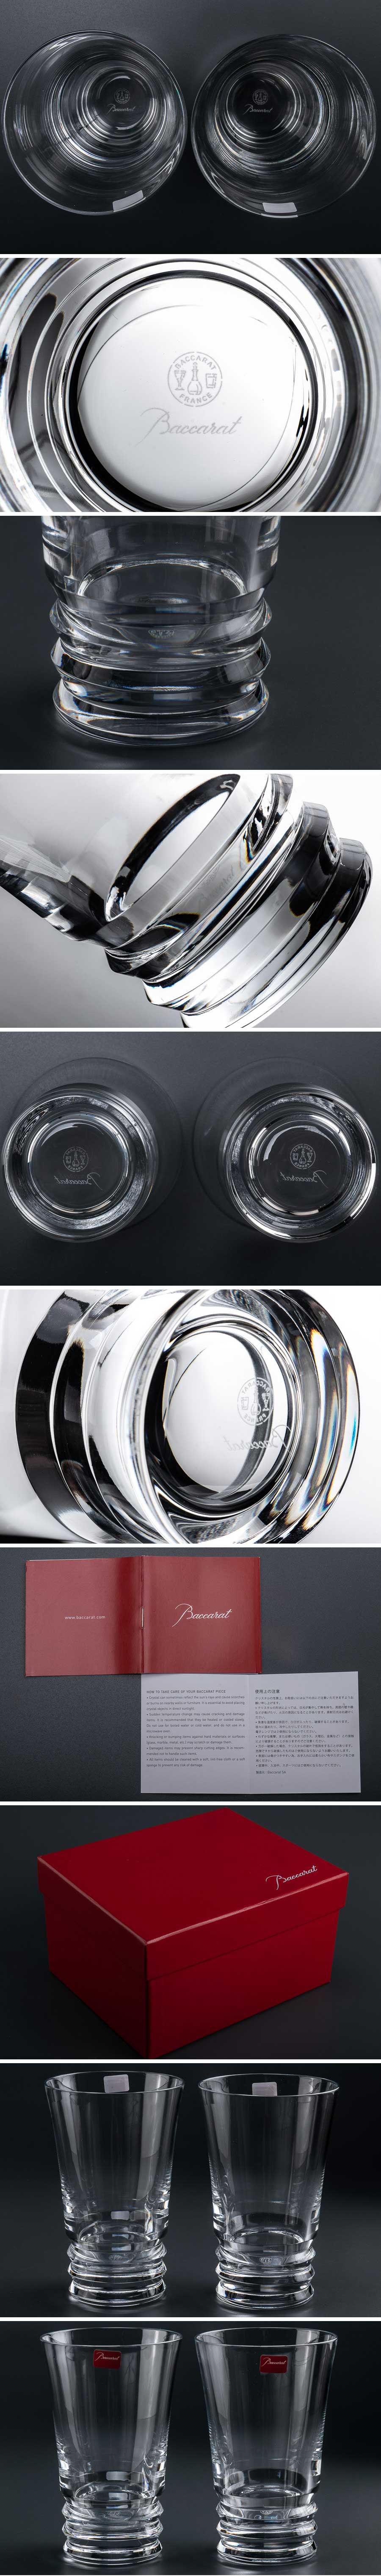 【数量限定限定SALE】『 Baccarat バカラ ベガ ハイボールグラス 2客 箱付 7806 』 2個組 洋食器 ブランド テーブルウェア クリスタルガラス 工芸ガラス